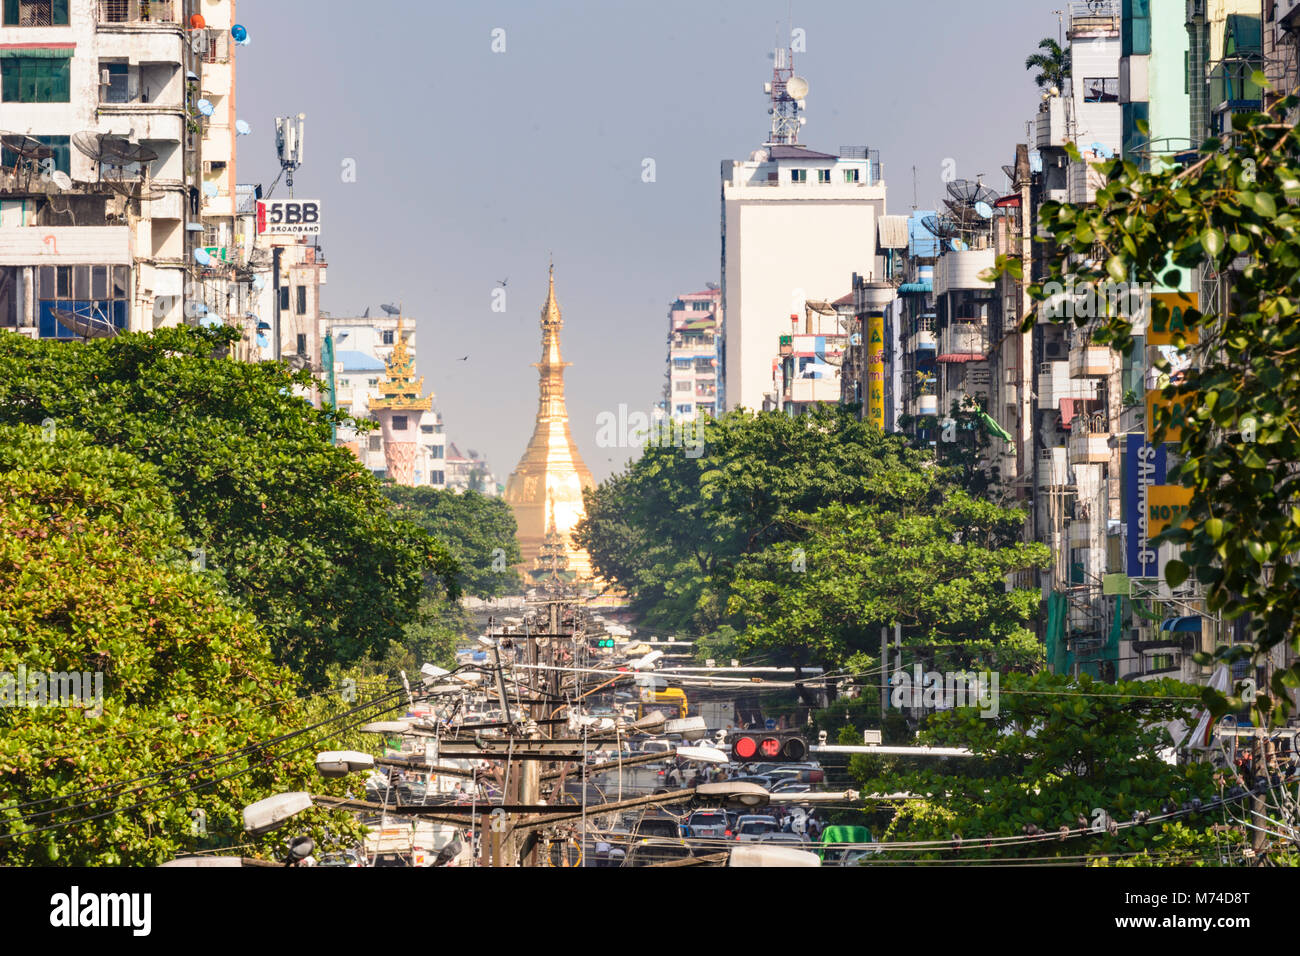 Yangon (Rangoon): Maha Bandoola Road, vista di golden Sule Pagoda, il traffico stradale, quartiere coloniale, Regione di Yangon, Myanmar (Birmania) Foto Stock